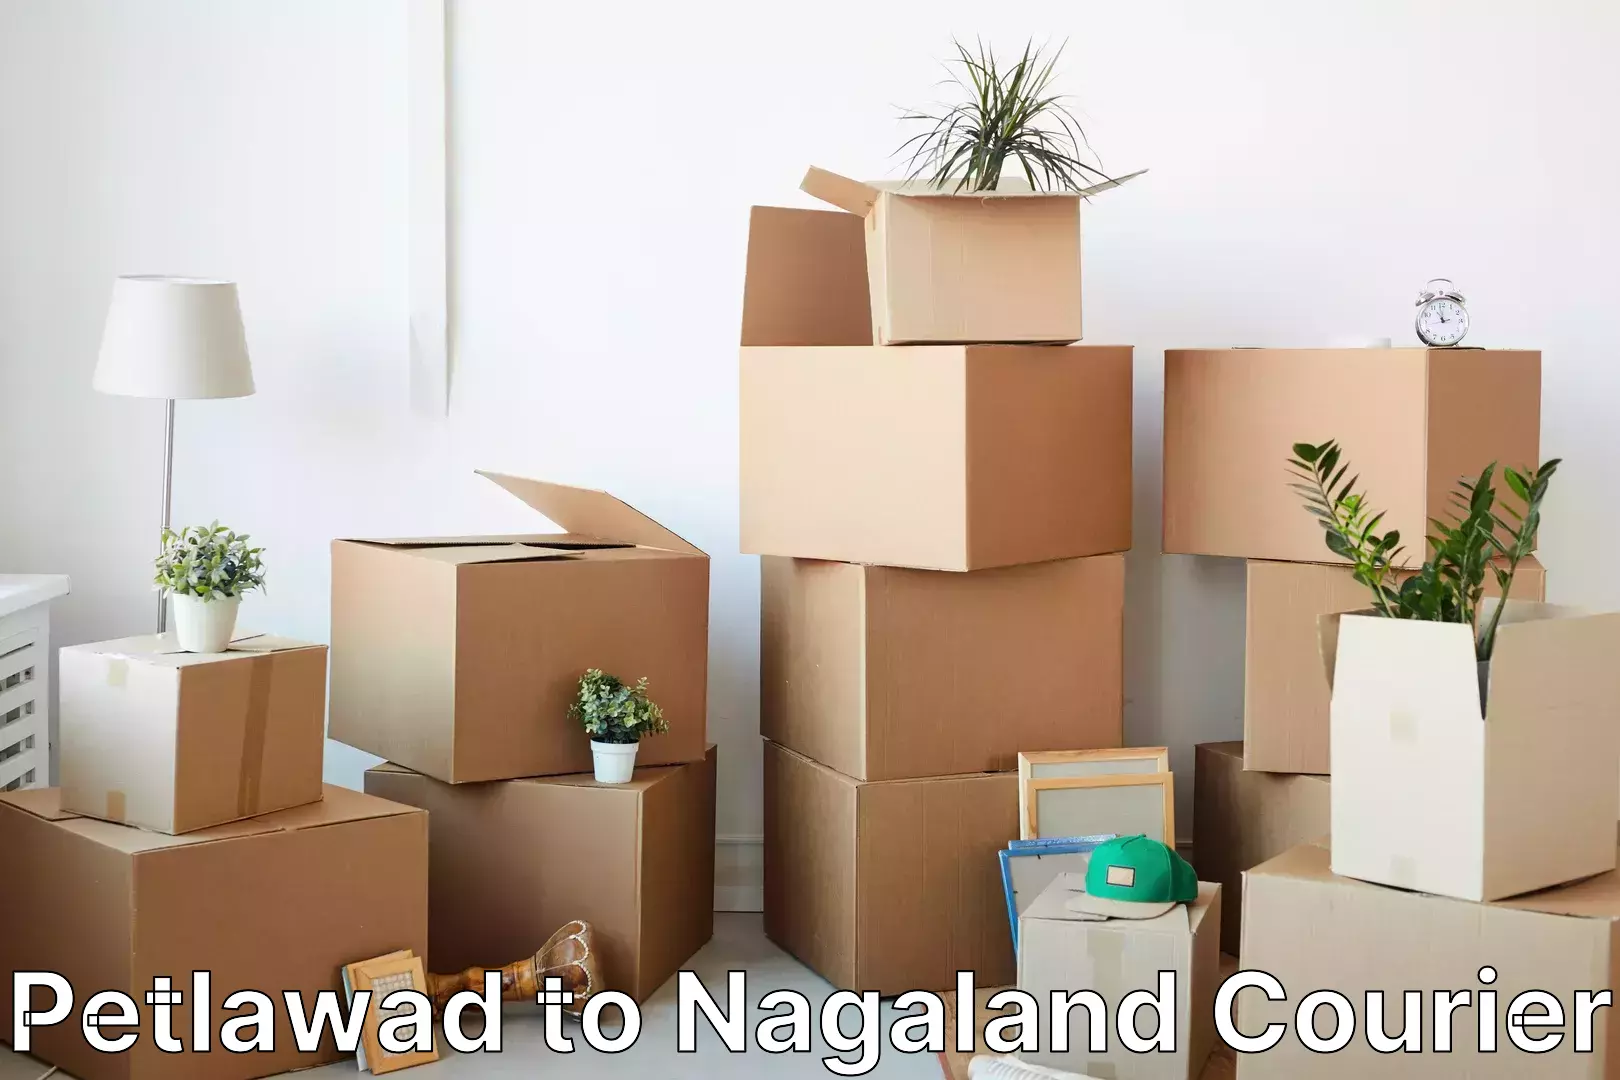 Quick parcel dispatch Petlawad to Nagaland